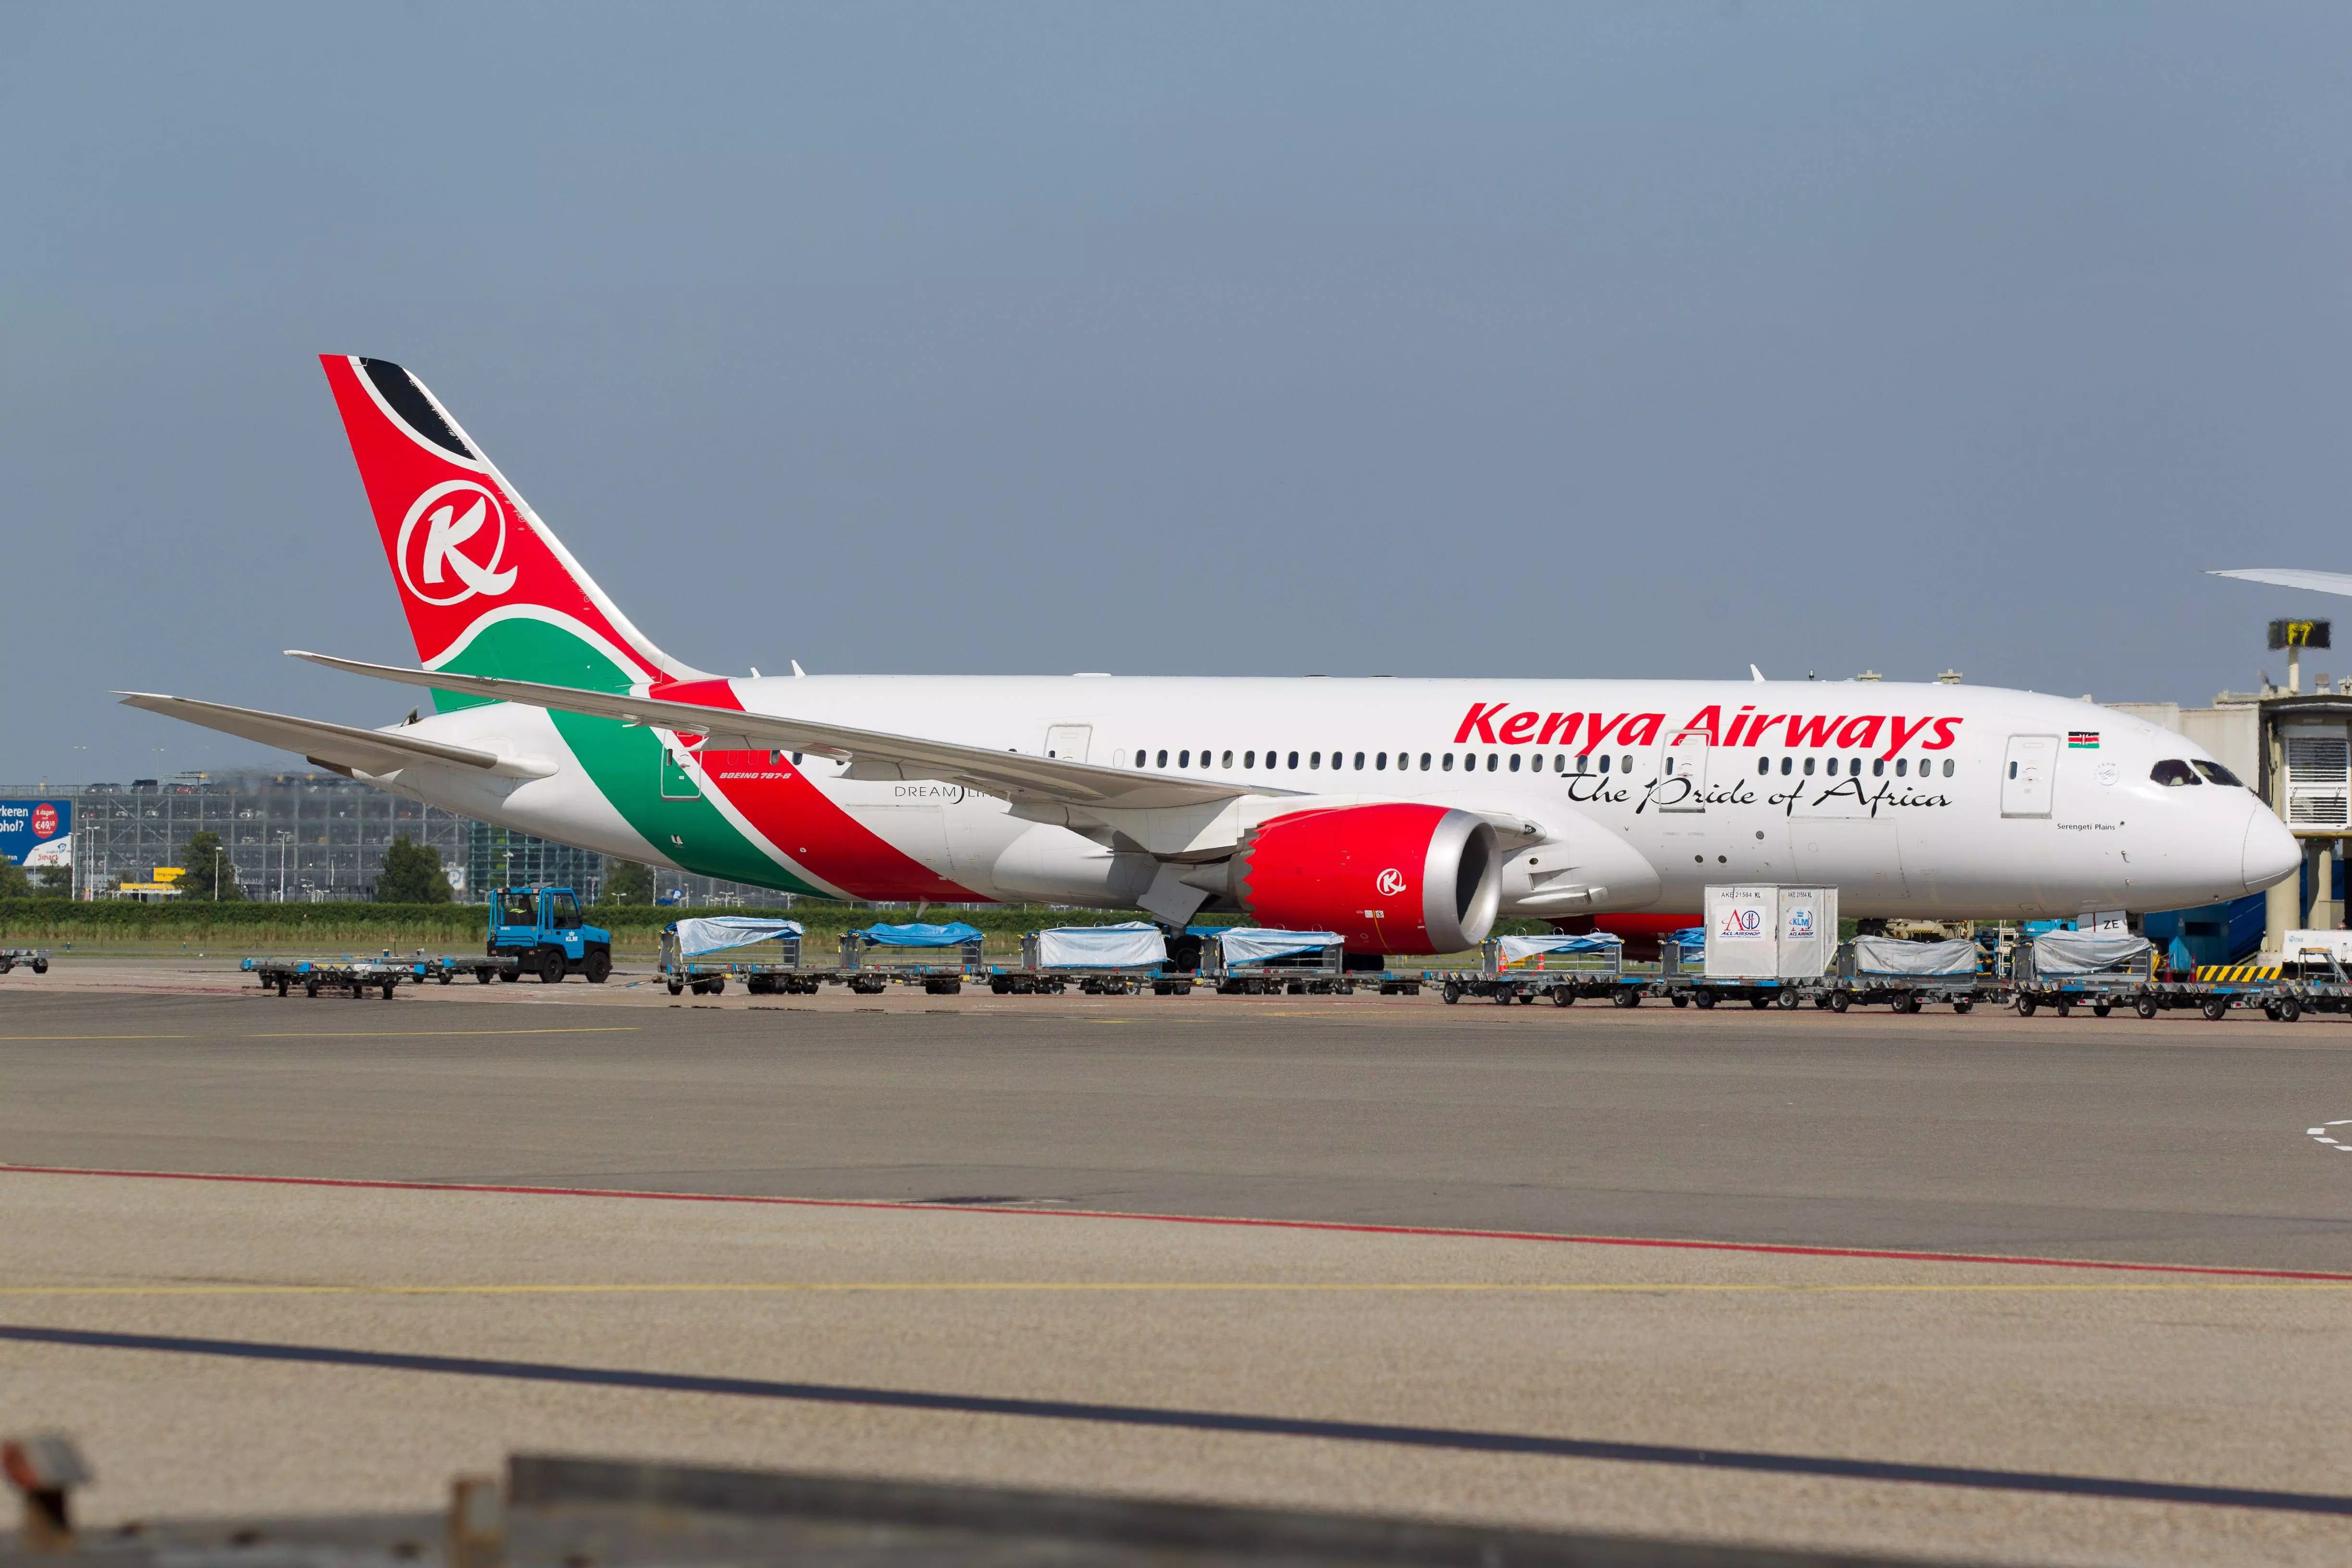 Kenya airways | book flights and save